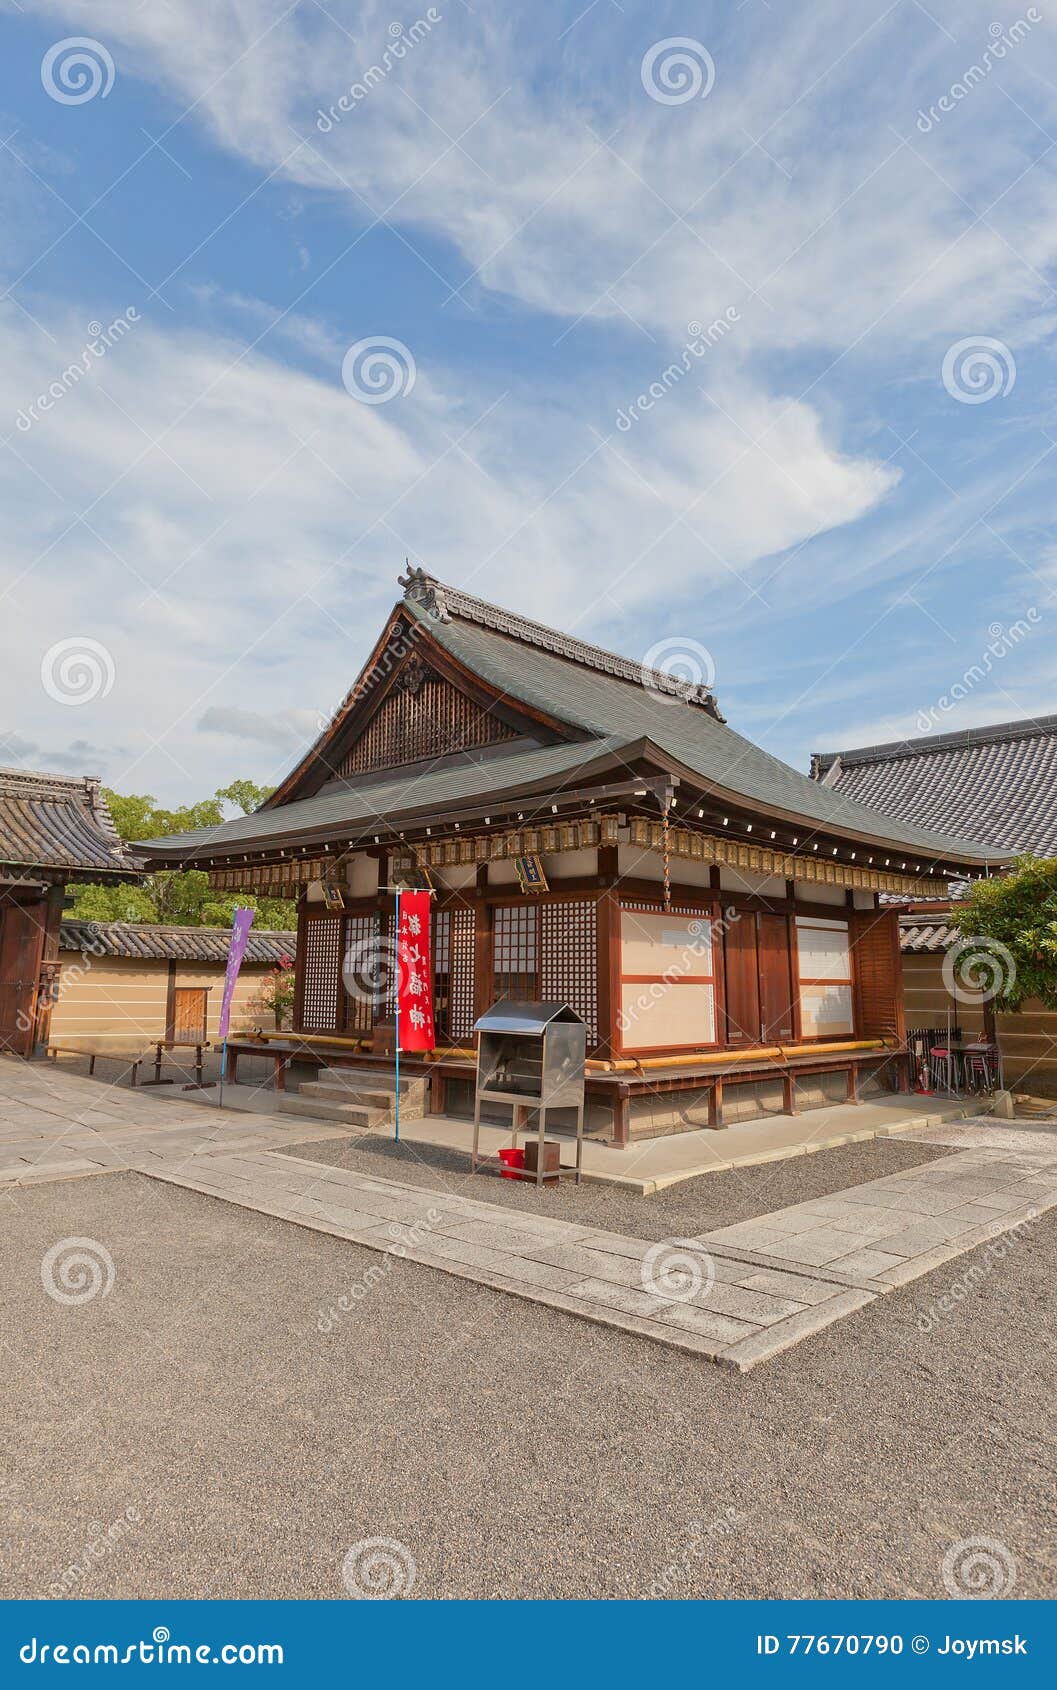 small subordinate temple in toji temple of kyoto. unesco site